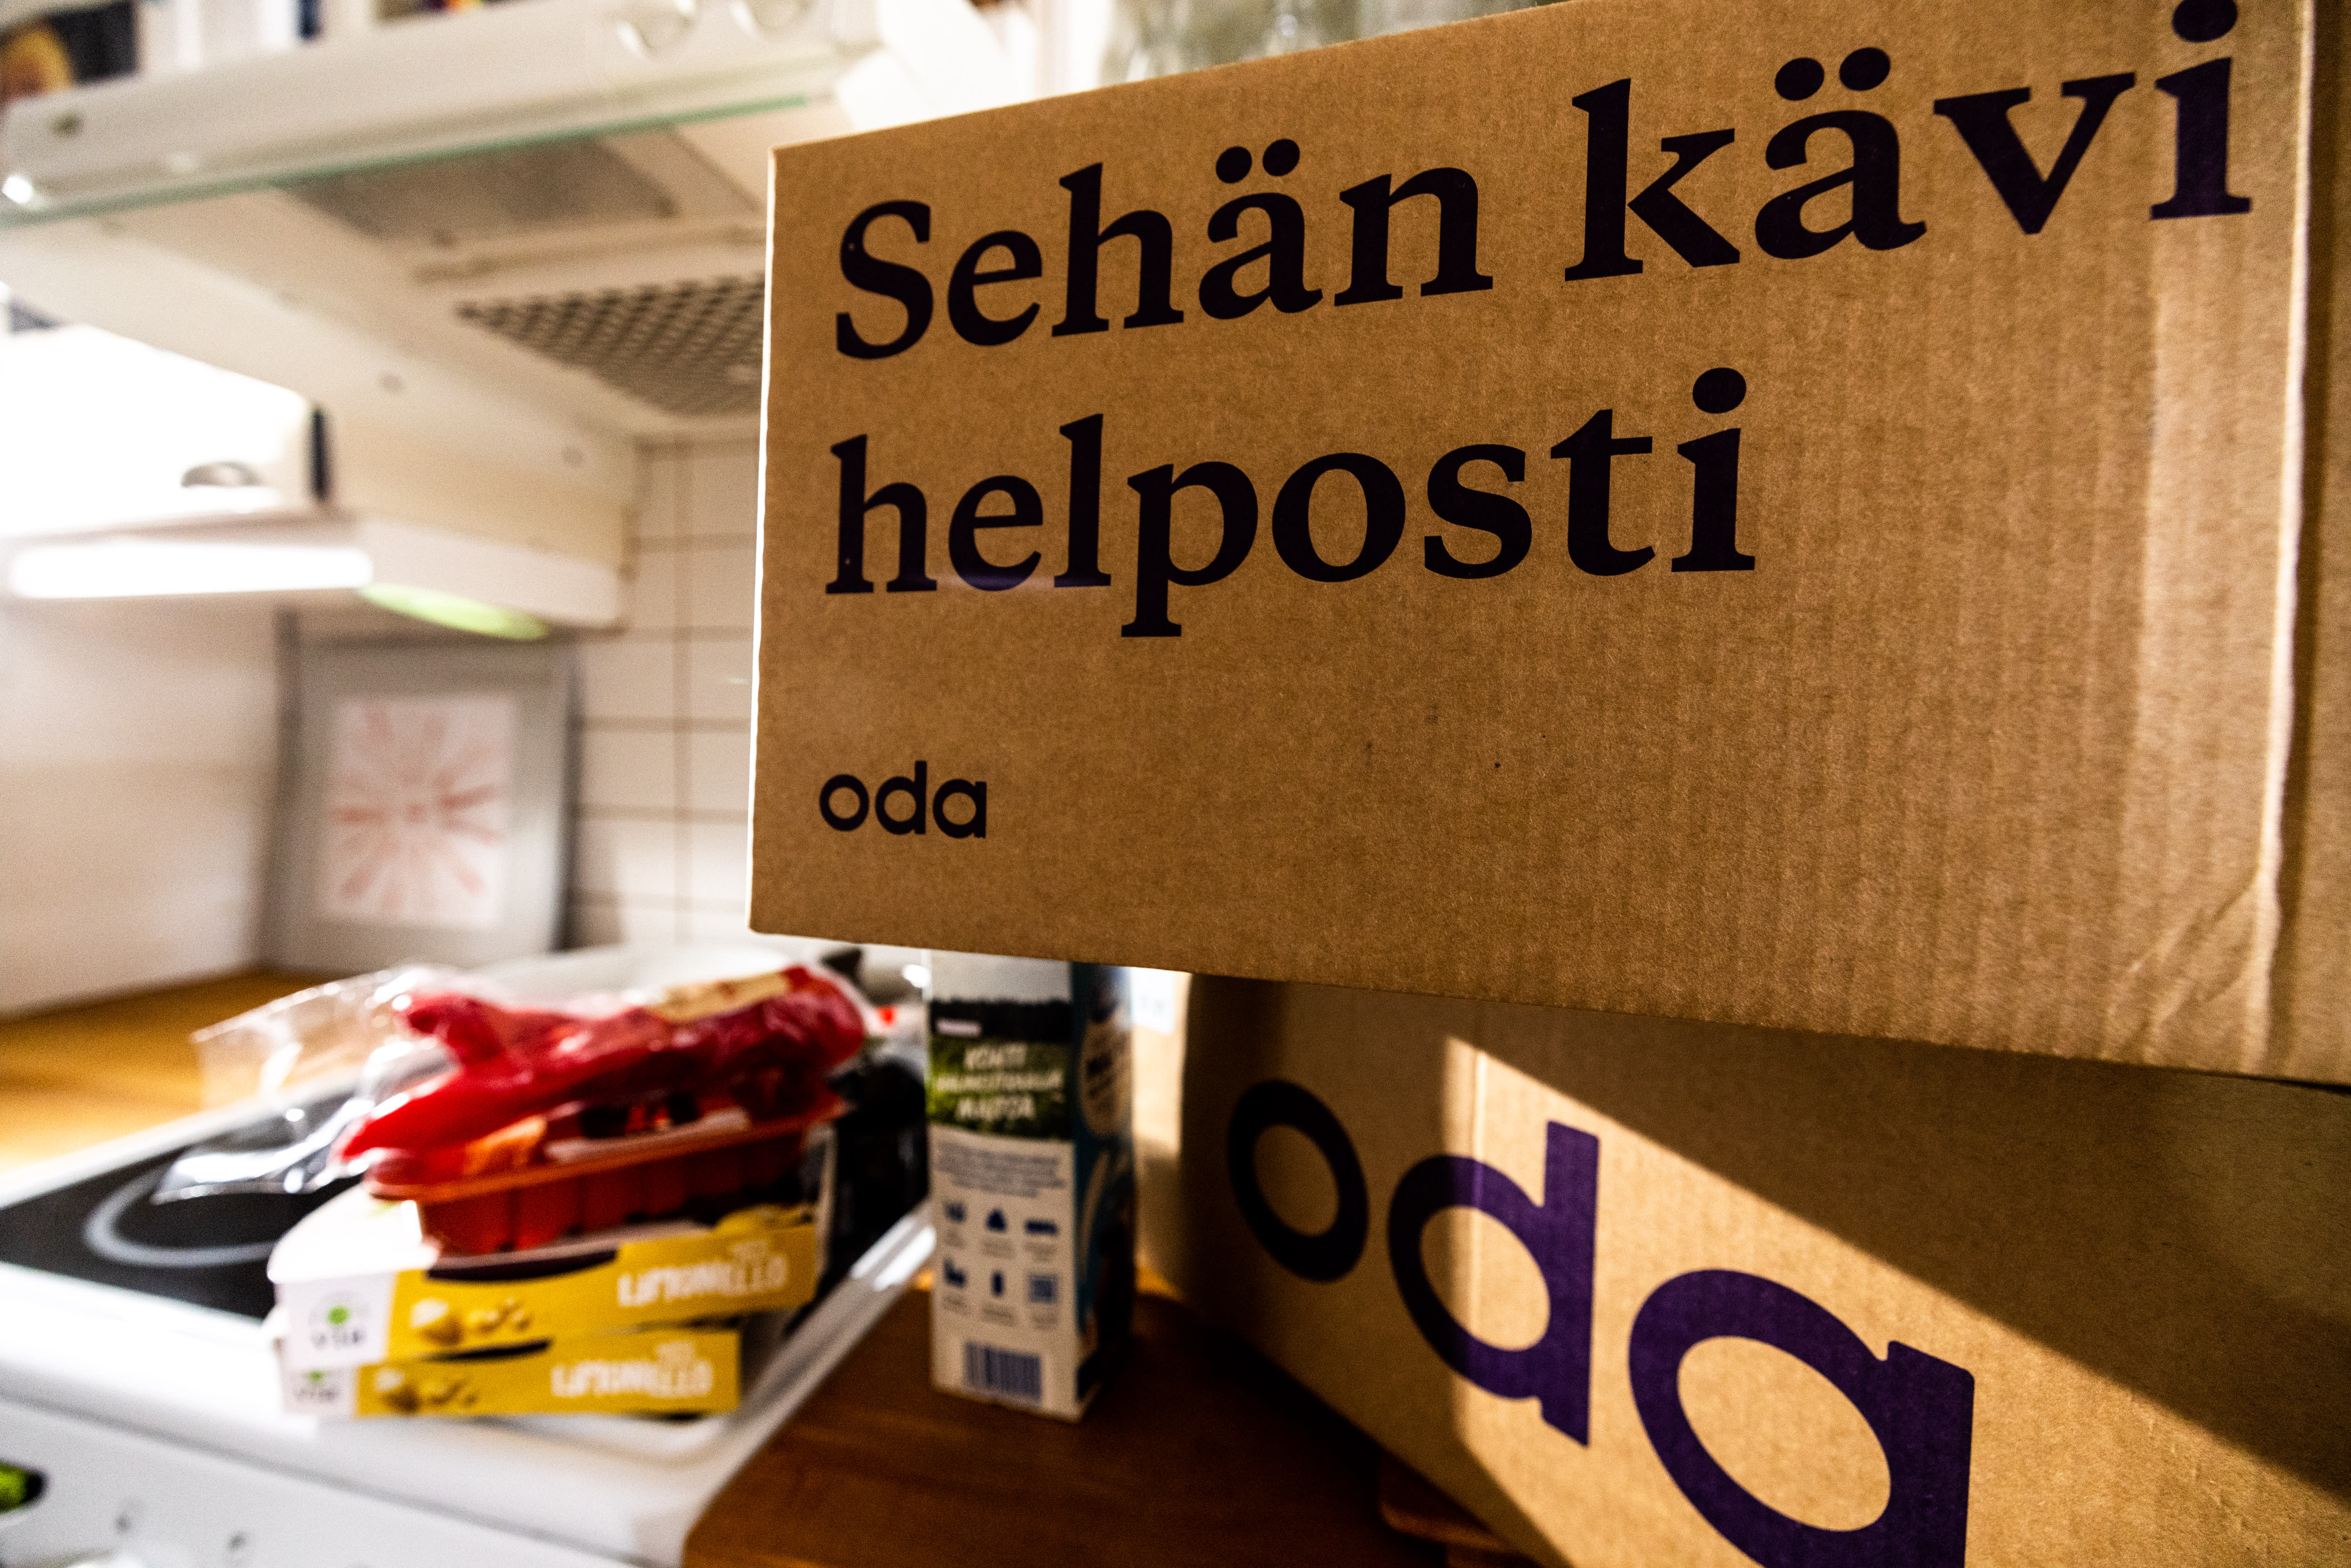 オンラインストアOdaがXNUMX年後にフィンランドでの営業を終了